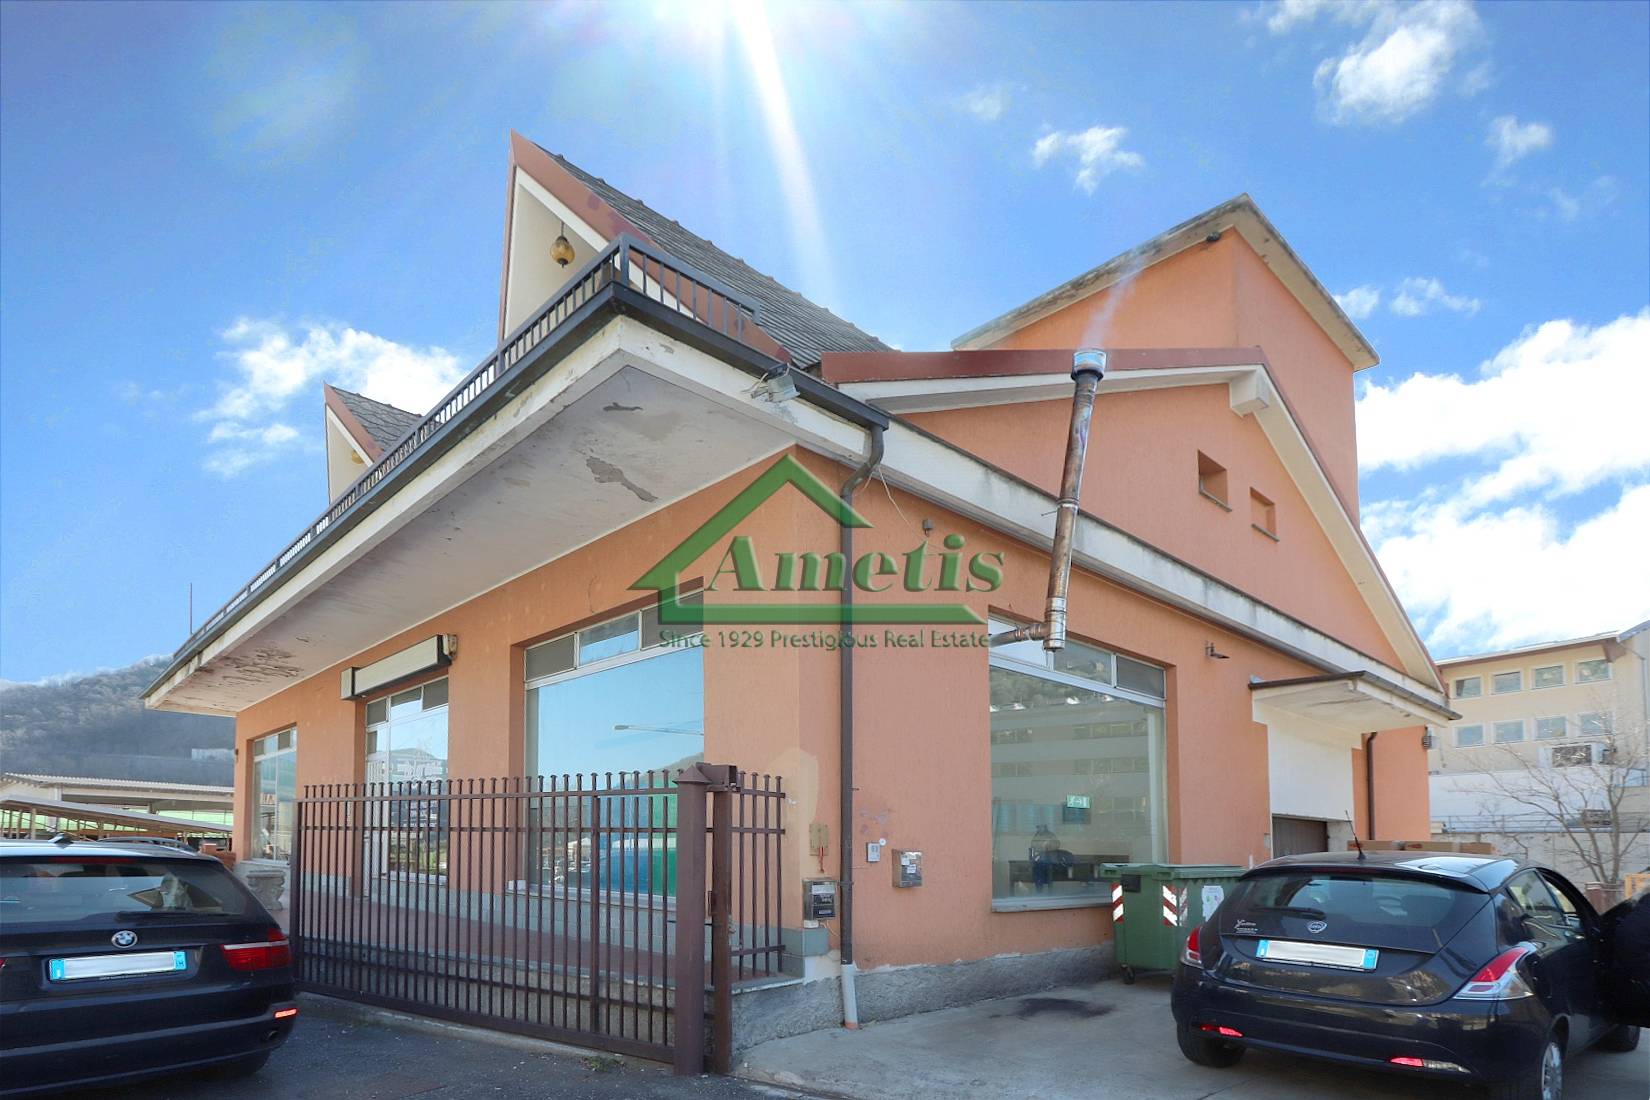 Negozio / Locale in vendita a Pieve di Teco, 8 locali, prezzo € 320.000 | PortaleAgenzieImmobiliari.it